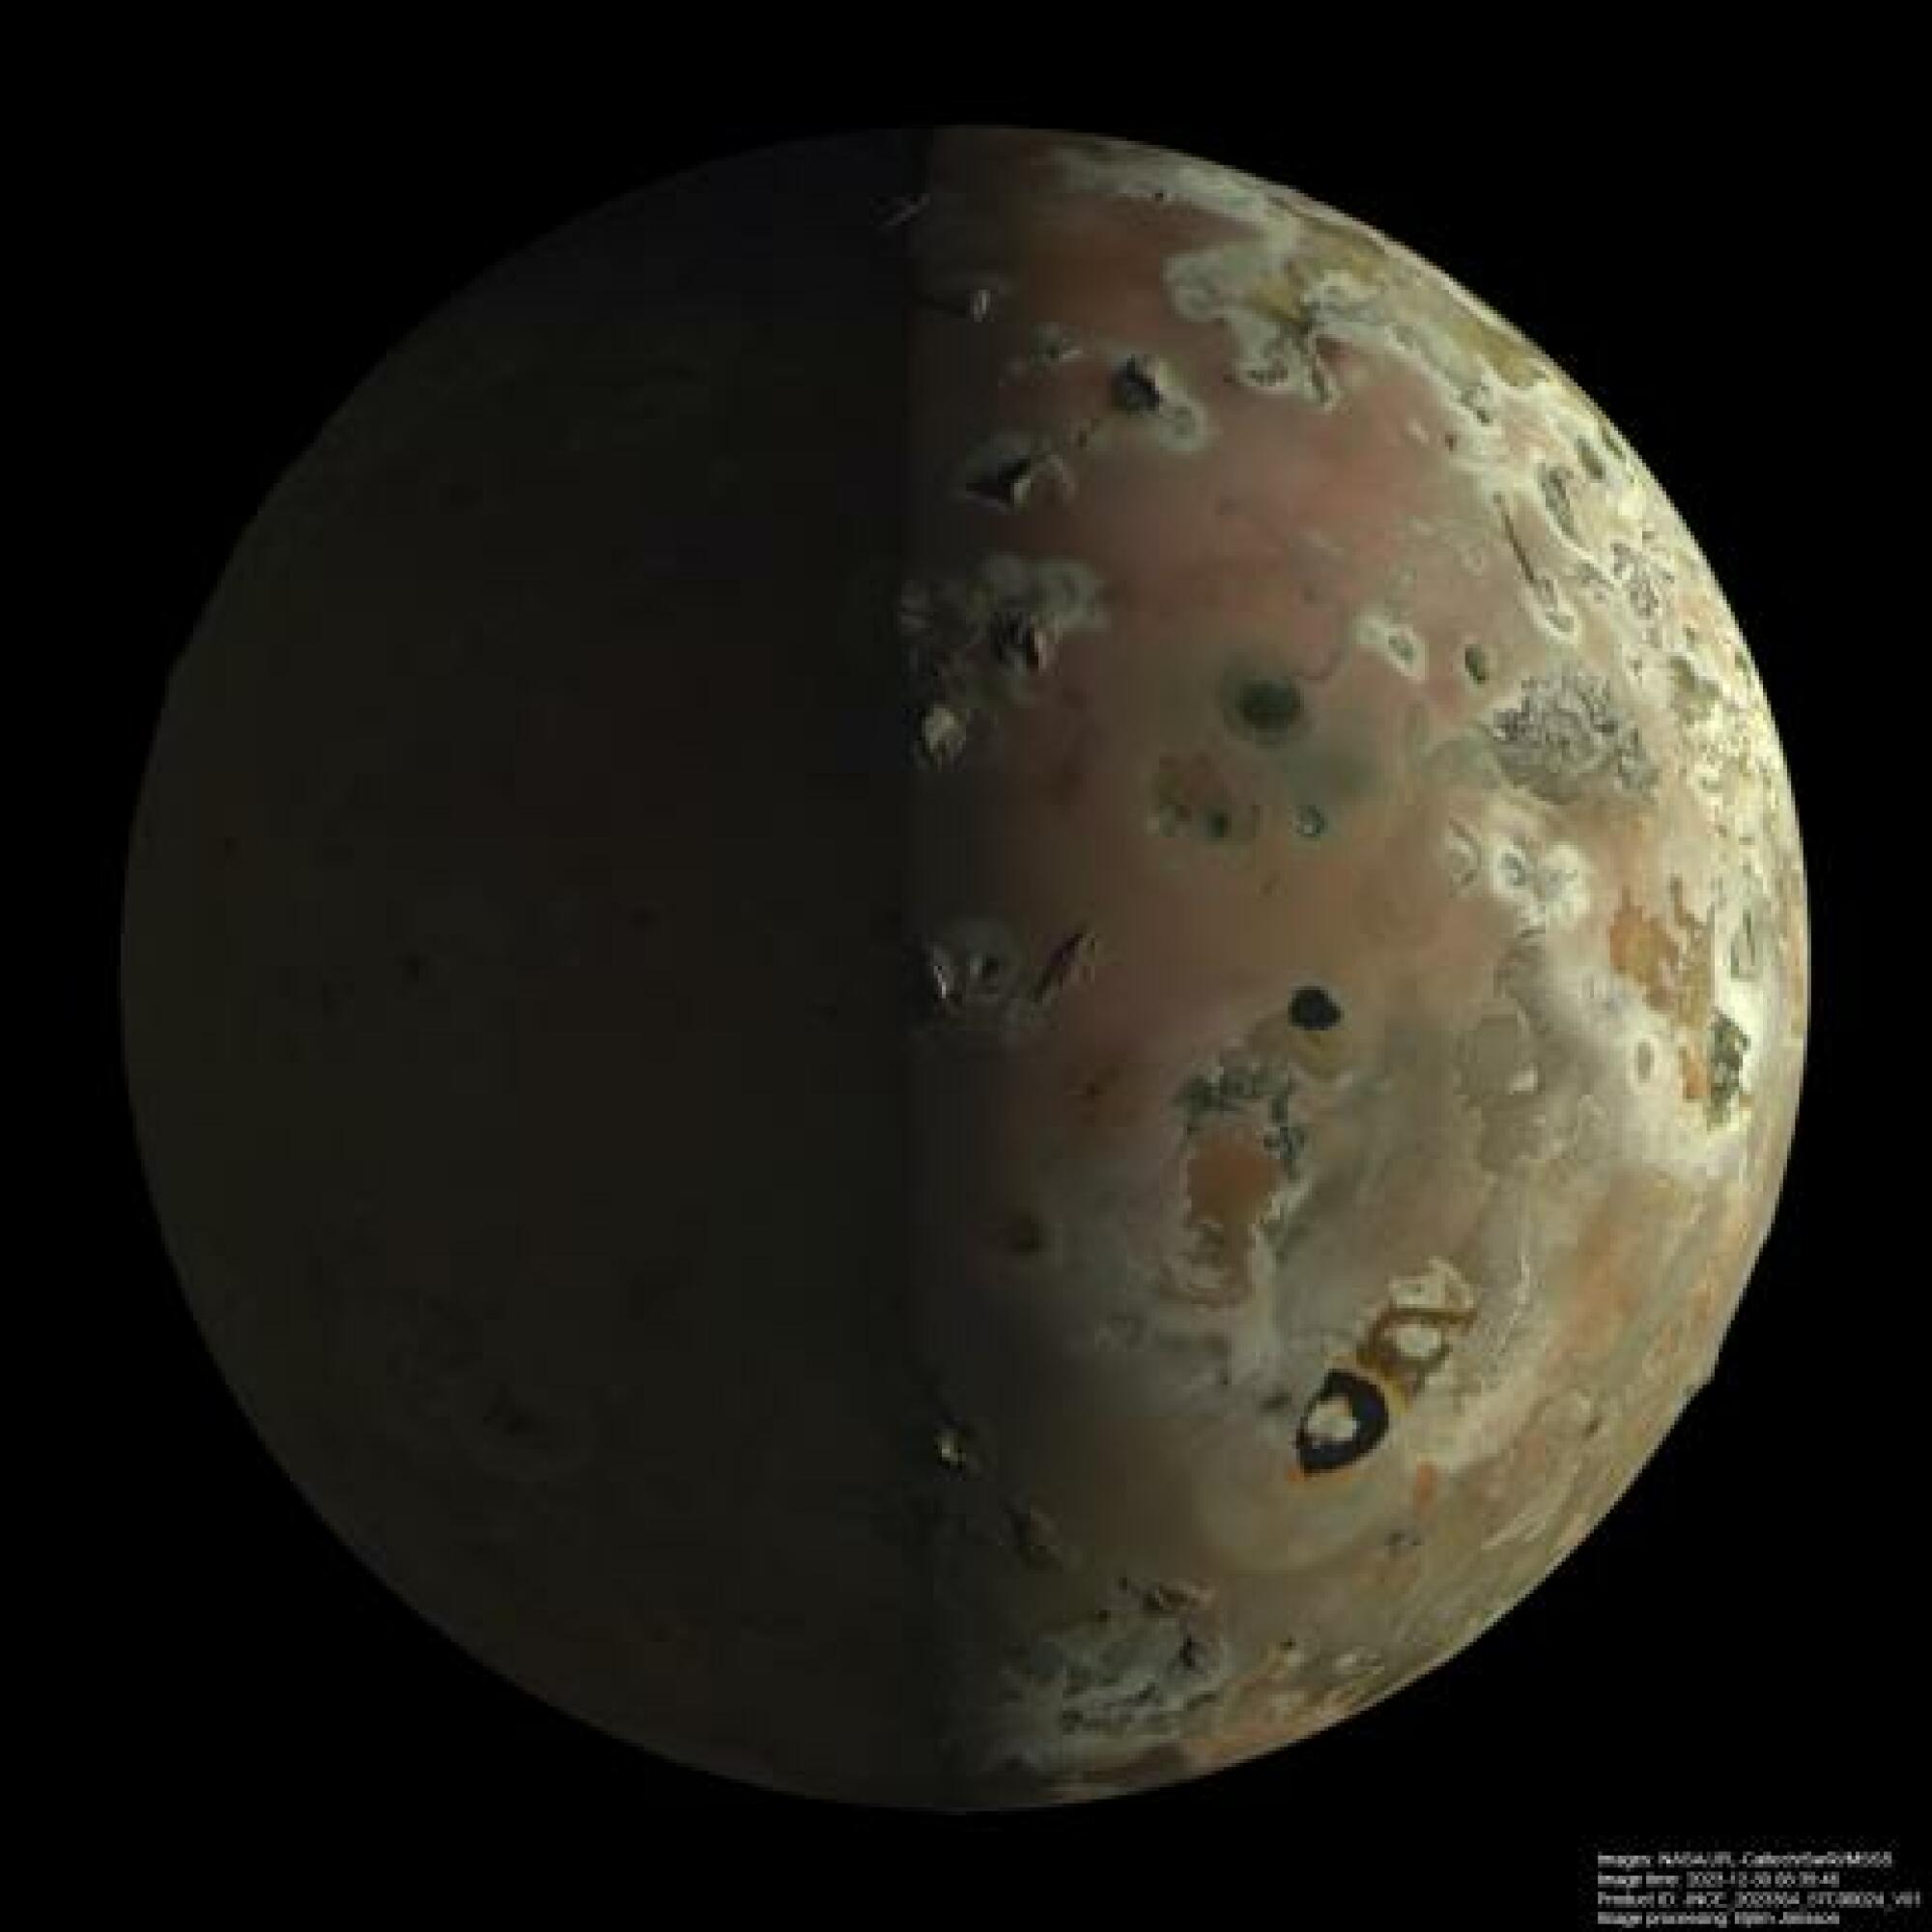 volcanoes on Jupiter's moon Io